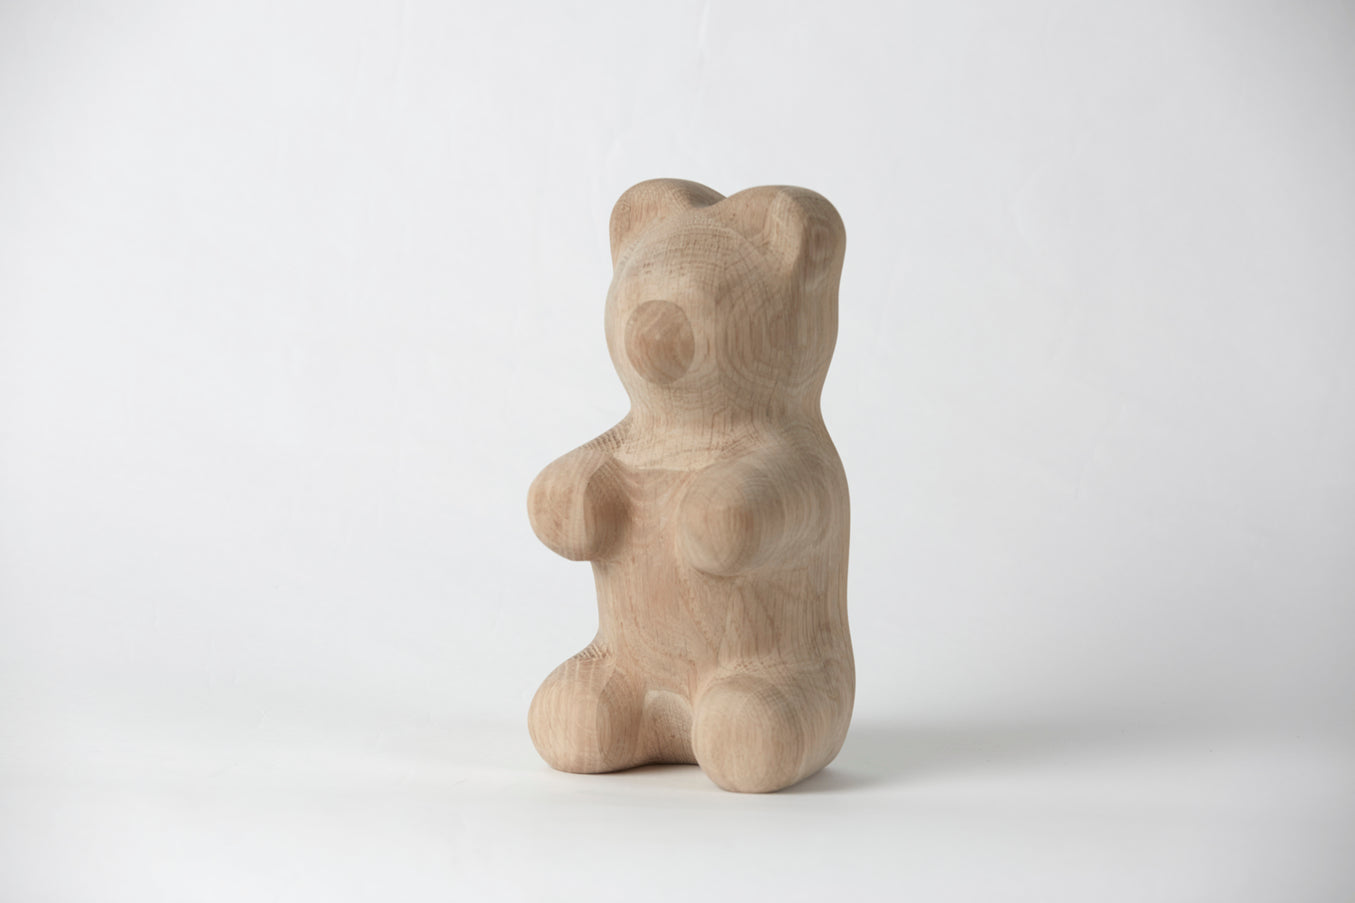 Dětský gumový medvěd dekorativní postava dub, velký